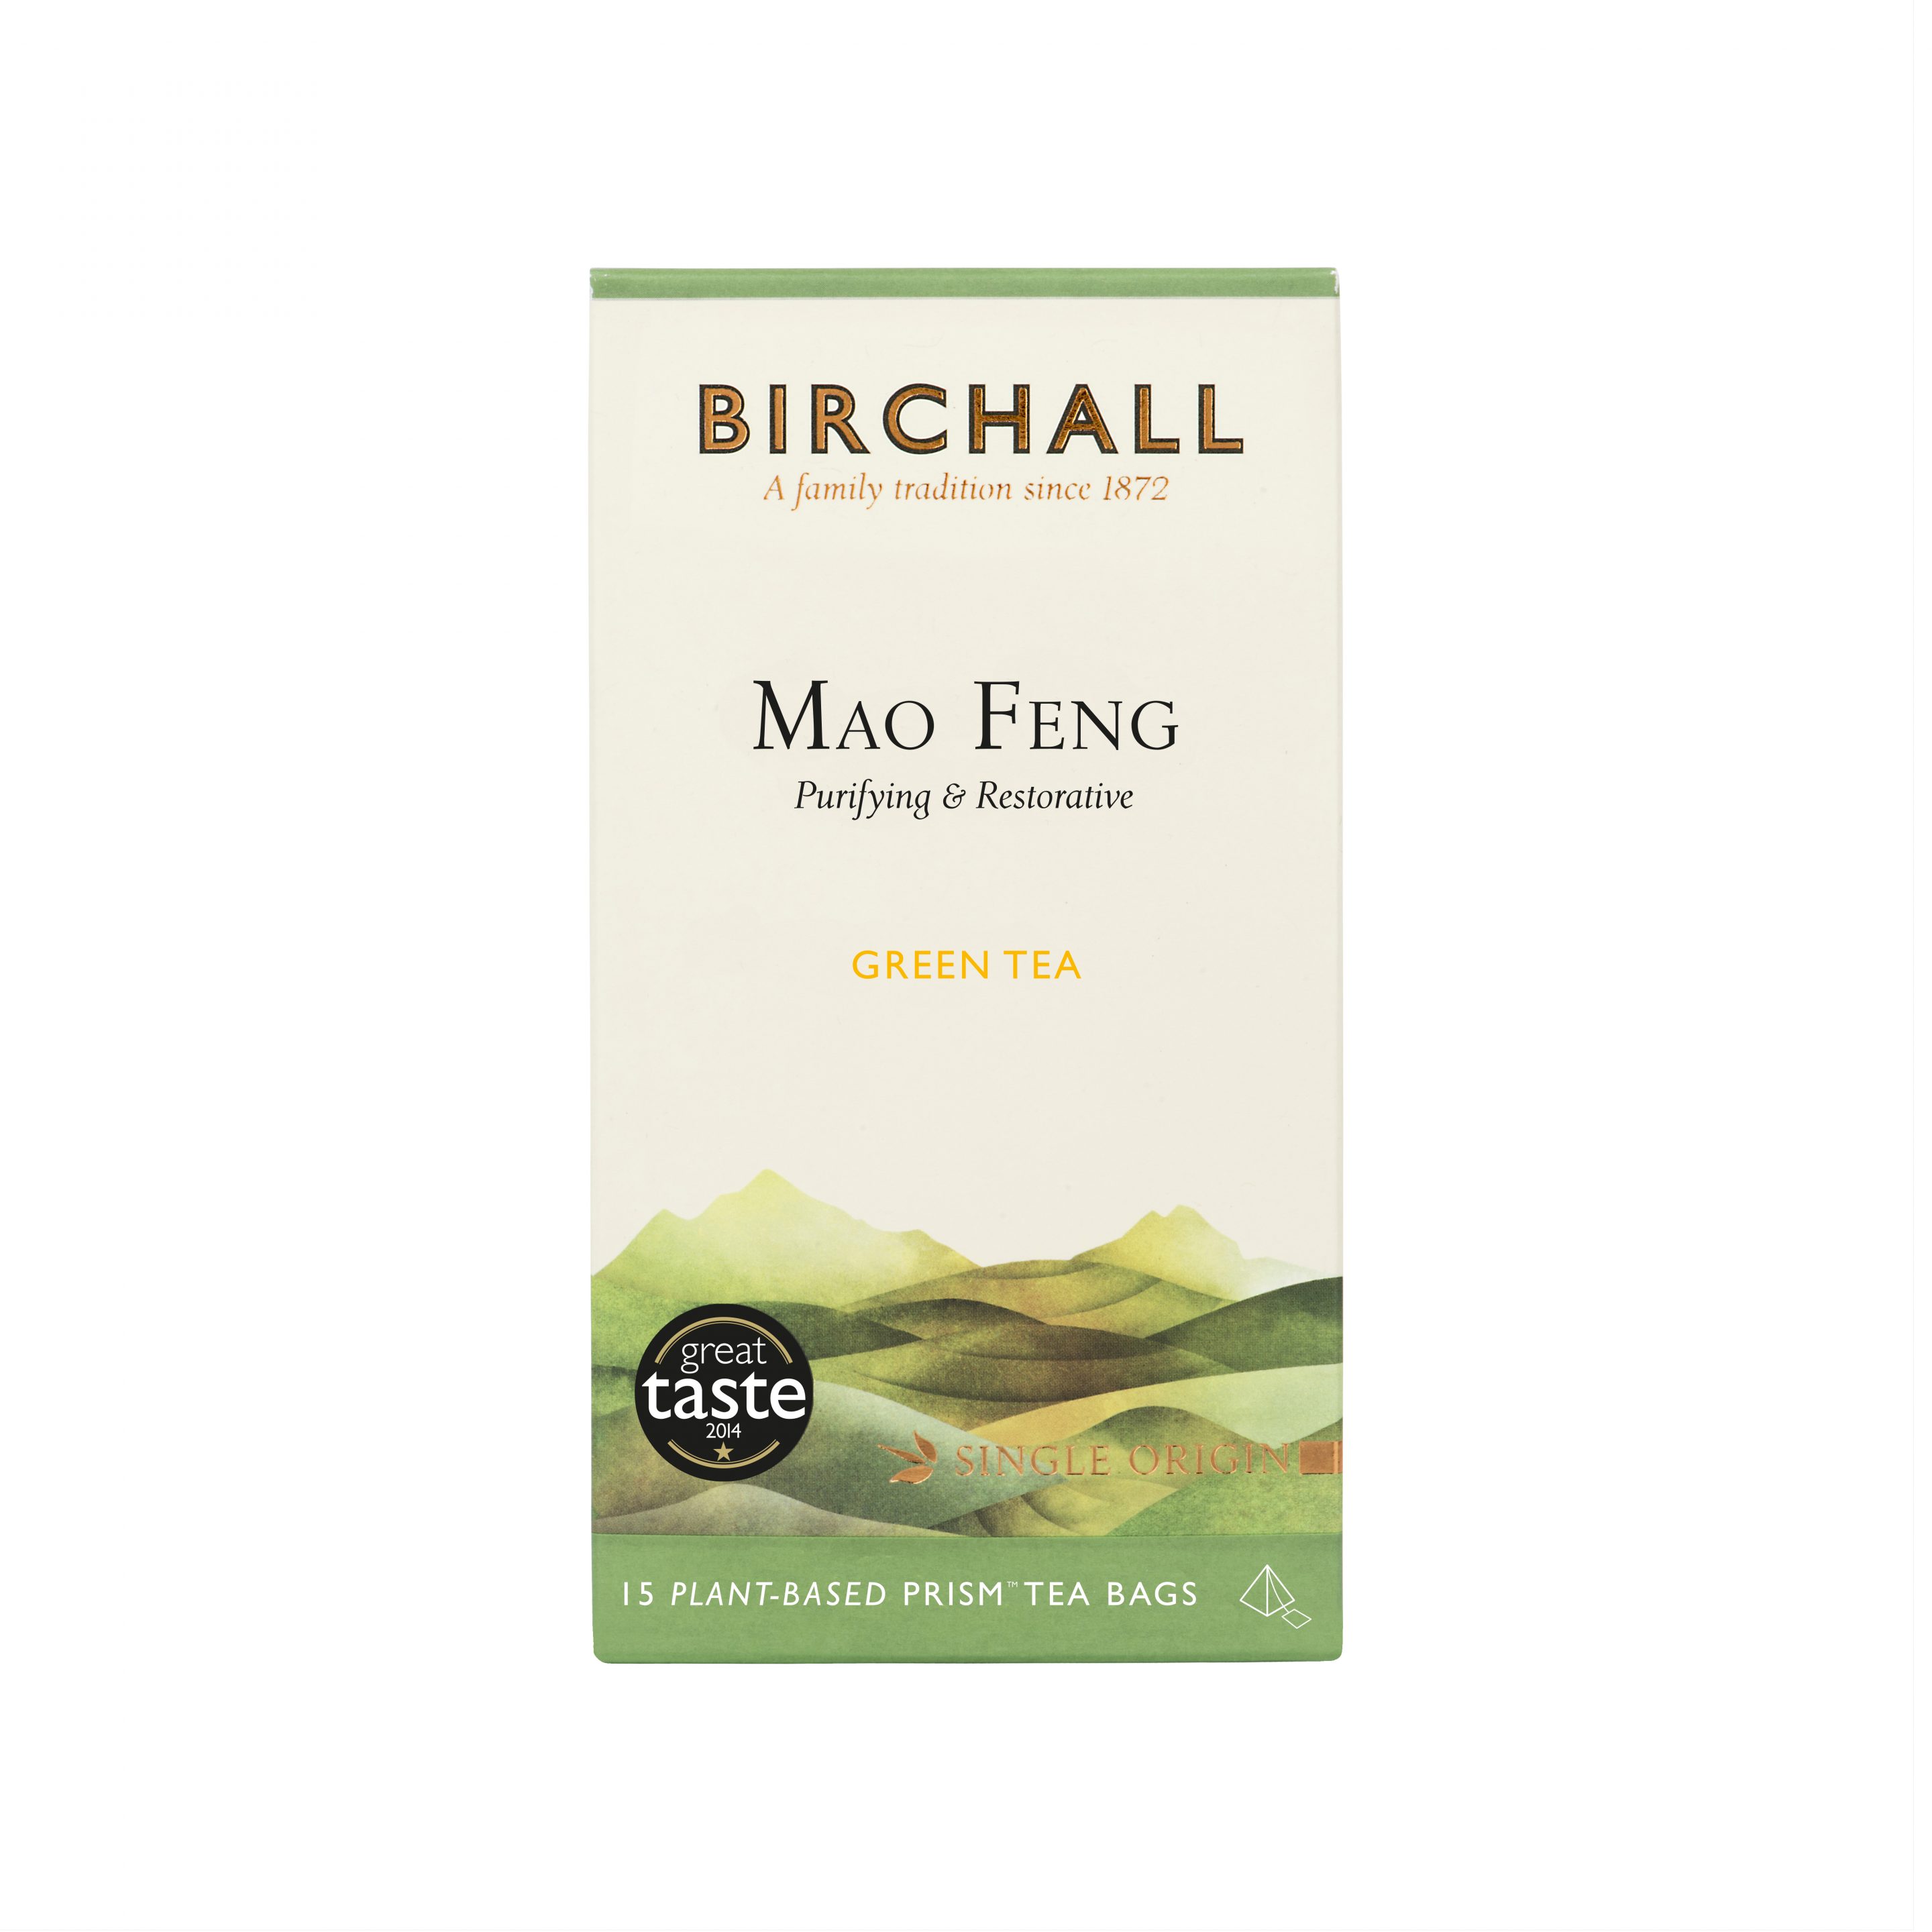 Birchall Mao Feng Green Tea 15 Plant-Based Prism Tea Bags